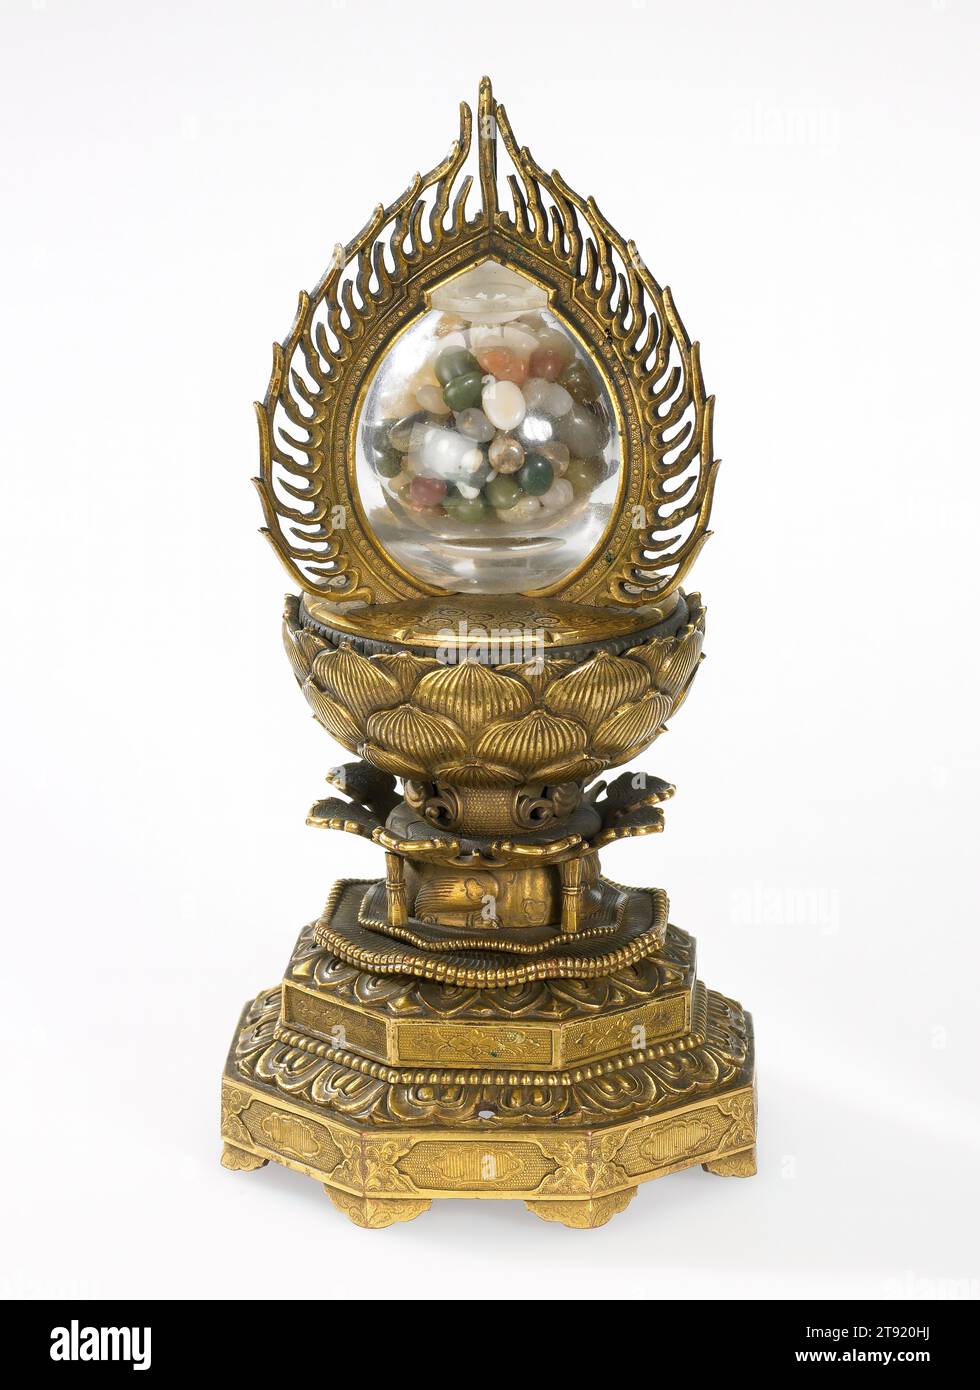 Buddhistisches Reliquiar in der Form eines Wunschjuwels, 16.-17. Jahrhundert, Unbekanntes Japanisch, 7 1/4 x 3 1/2 x 3/4 cm (18,42 x 8,89 x 9,53 cm), vergoldete Bronze, Steinkristall, Japan, 16.-17. Jahrhundert, die Aufbewahrung von Reliquien (Gebetsobjekte, die Körperteile verstorbener religiöser Figuren enthalten) ist seit dem Tod des historischen Weisen Sakyamuni in den 500er Jahren v. Chr. ein wichtiger Bestandteil des Buddhismus. Sakyamuni ist der Mann, der zuerst die Lehren dessen verbreitete, was Buddhismus werden würde. Er war der erste Mensch, der Erleuchtung erreichte, Leiden überwindete und buddha wurde. Stockfoto